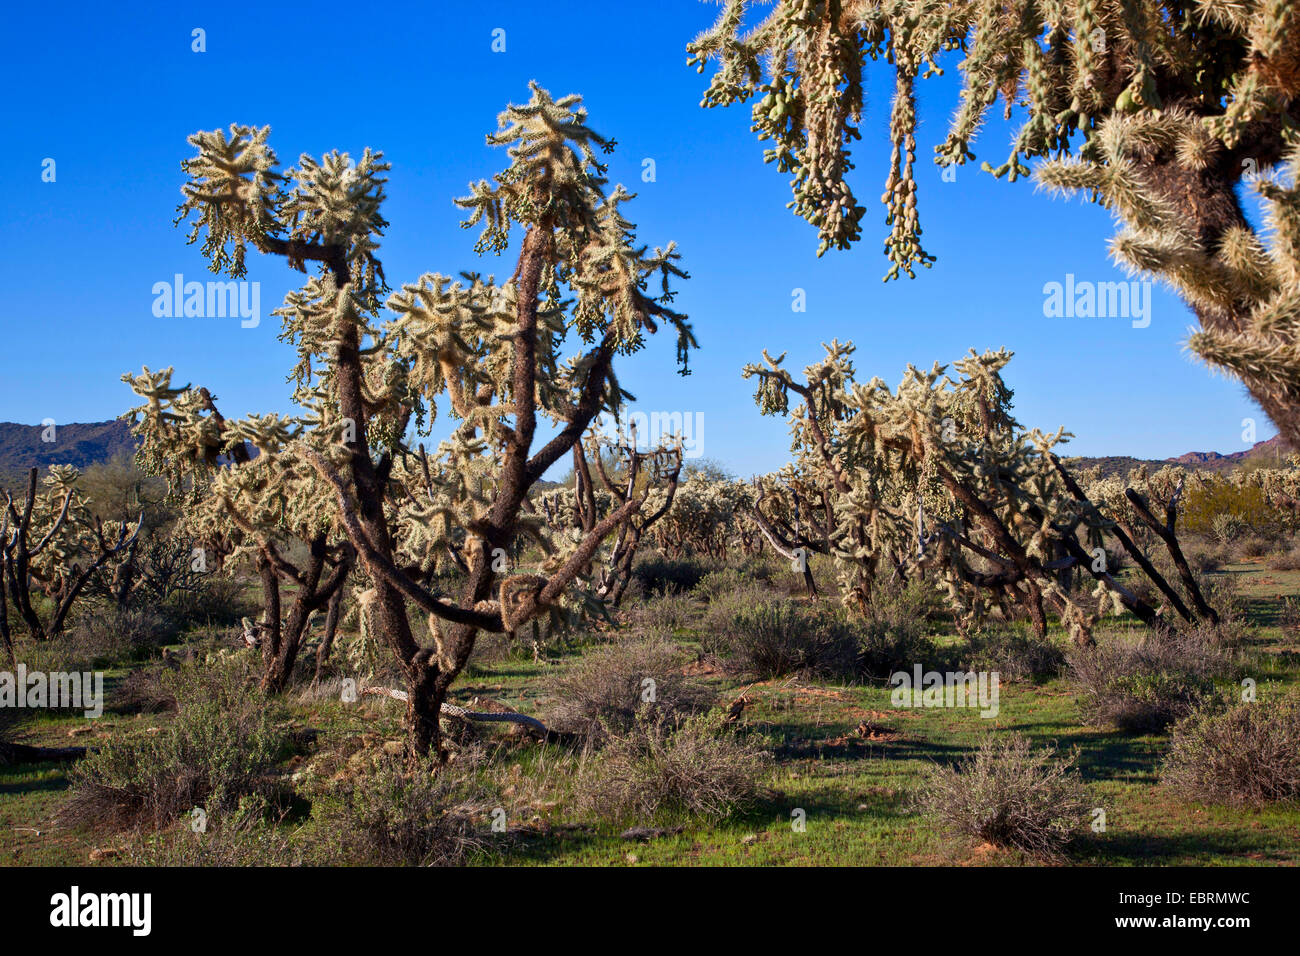 Teddy-bear cholla, Jumping Cholla, Argent (Opuntia cholla, Cylindropuntia bigelovii bigelovii) forêt de cactus, avec beaucoup de fruits dans le désert de Sonora, en Arizona, USA Banque D'Images